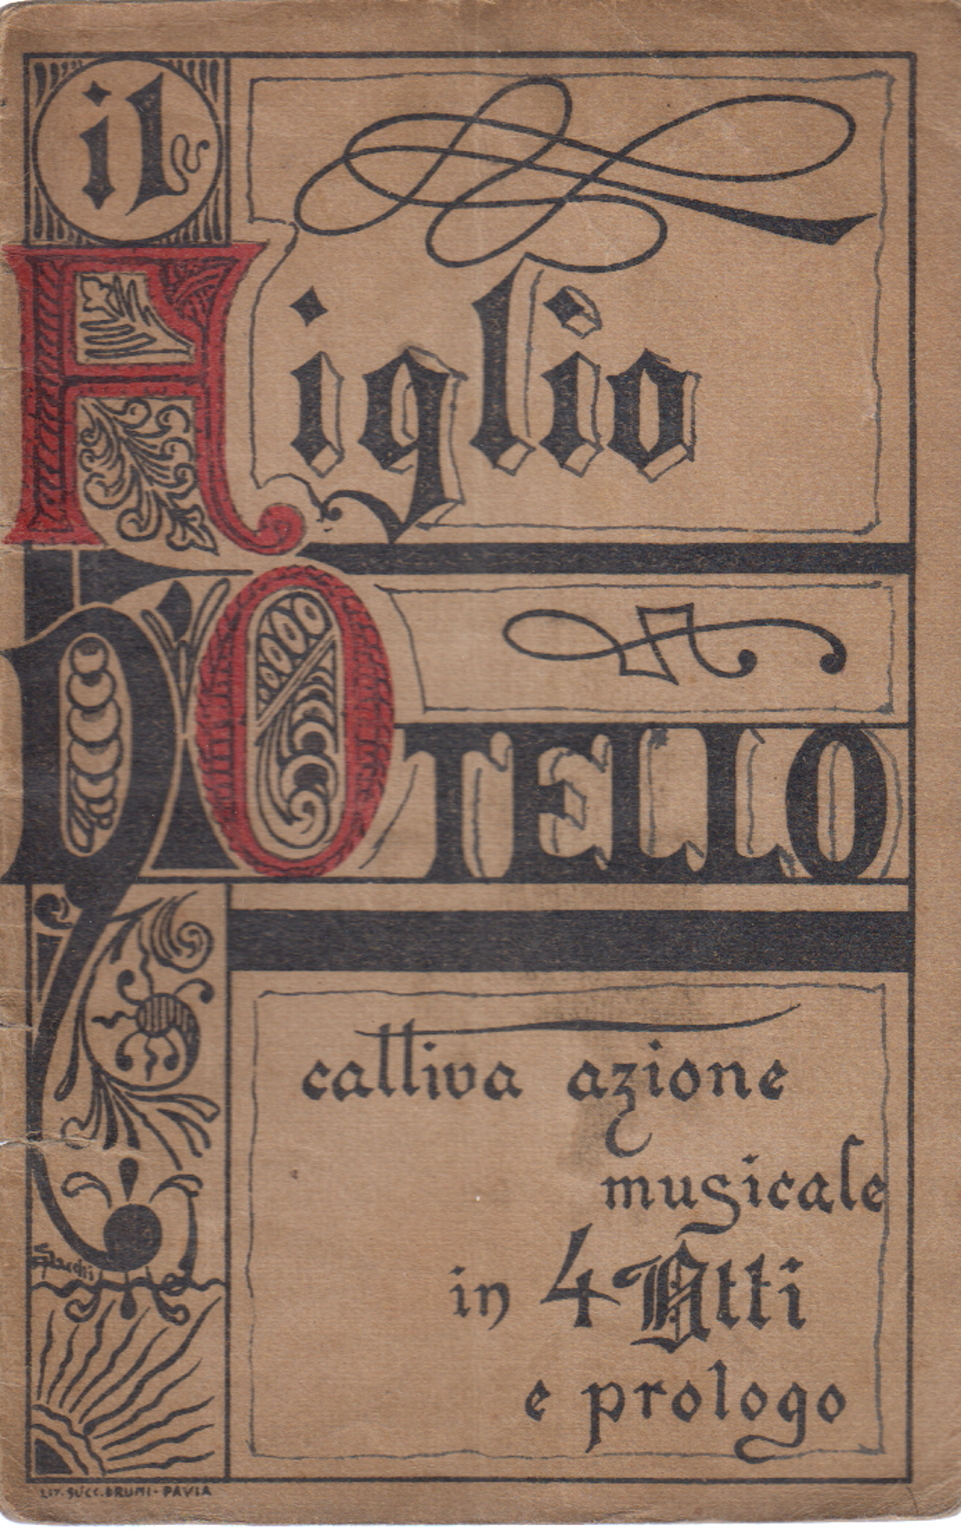 Der Sohn des Othello, eine Chronik von 1300 Katze, AA.VV.